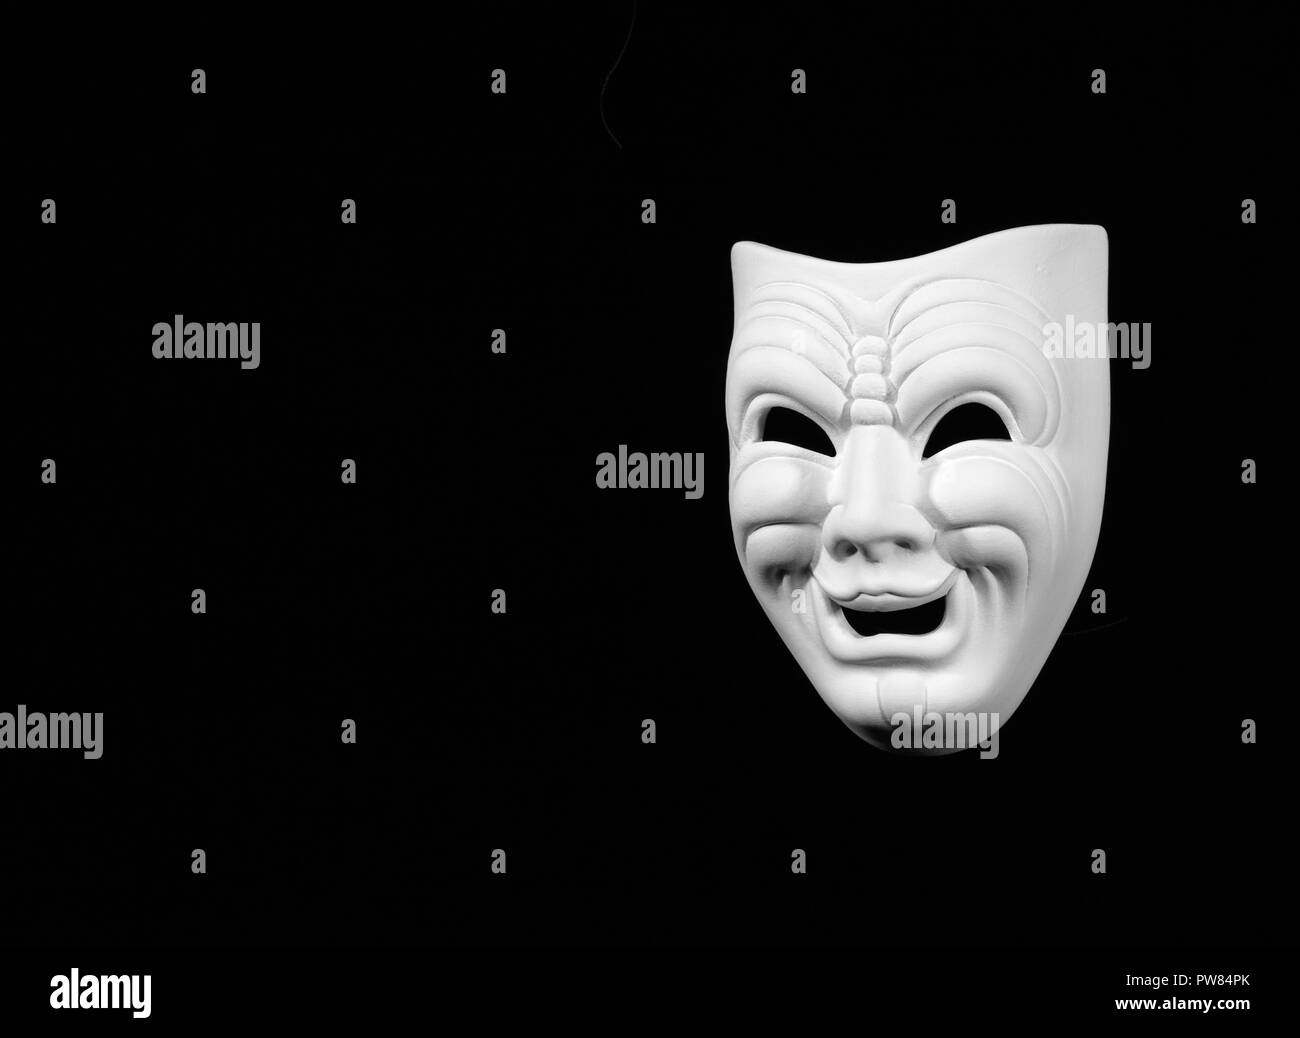 Masque de théâtre le expresing comédie, masque blanc sur fond noir avec de l'espace libre pour le texte Banque D'Images